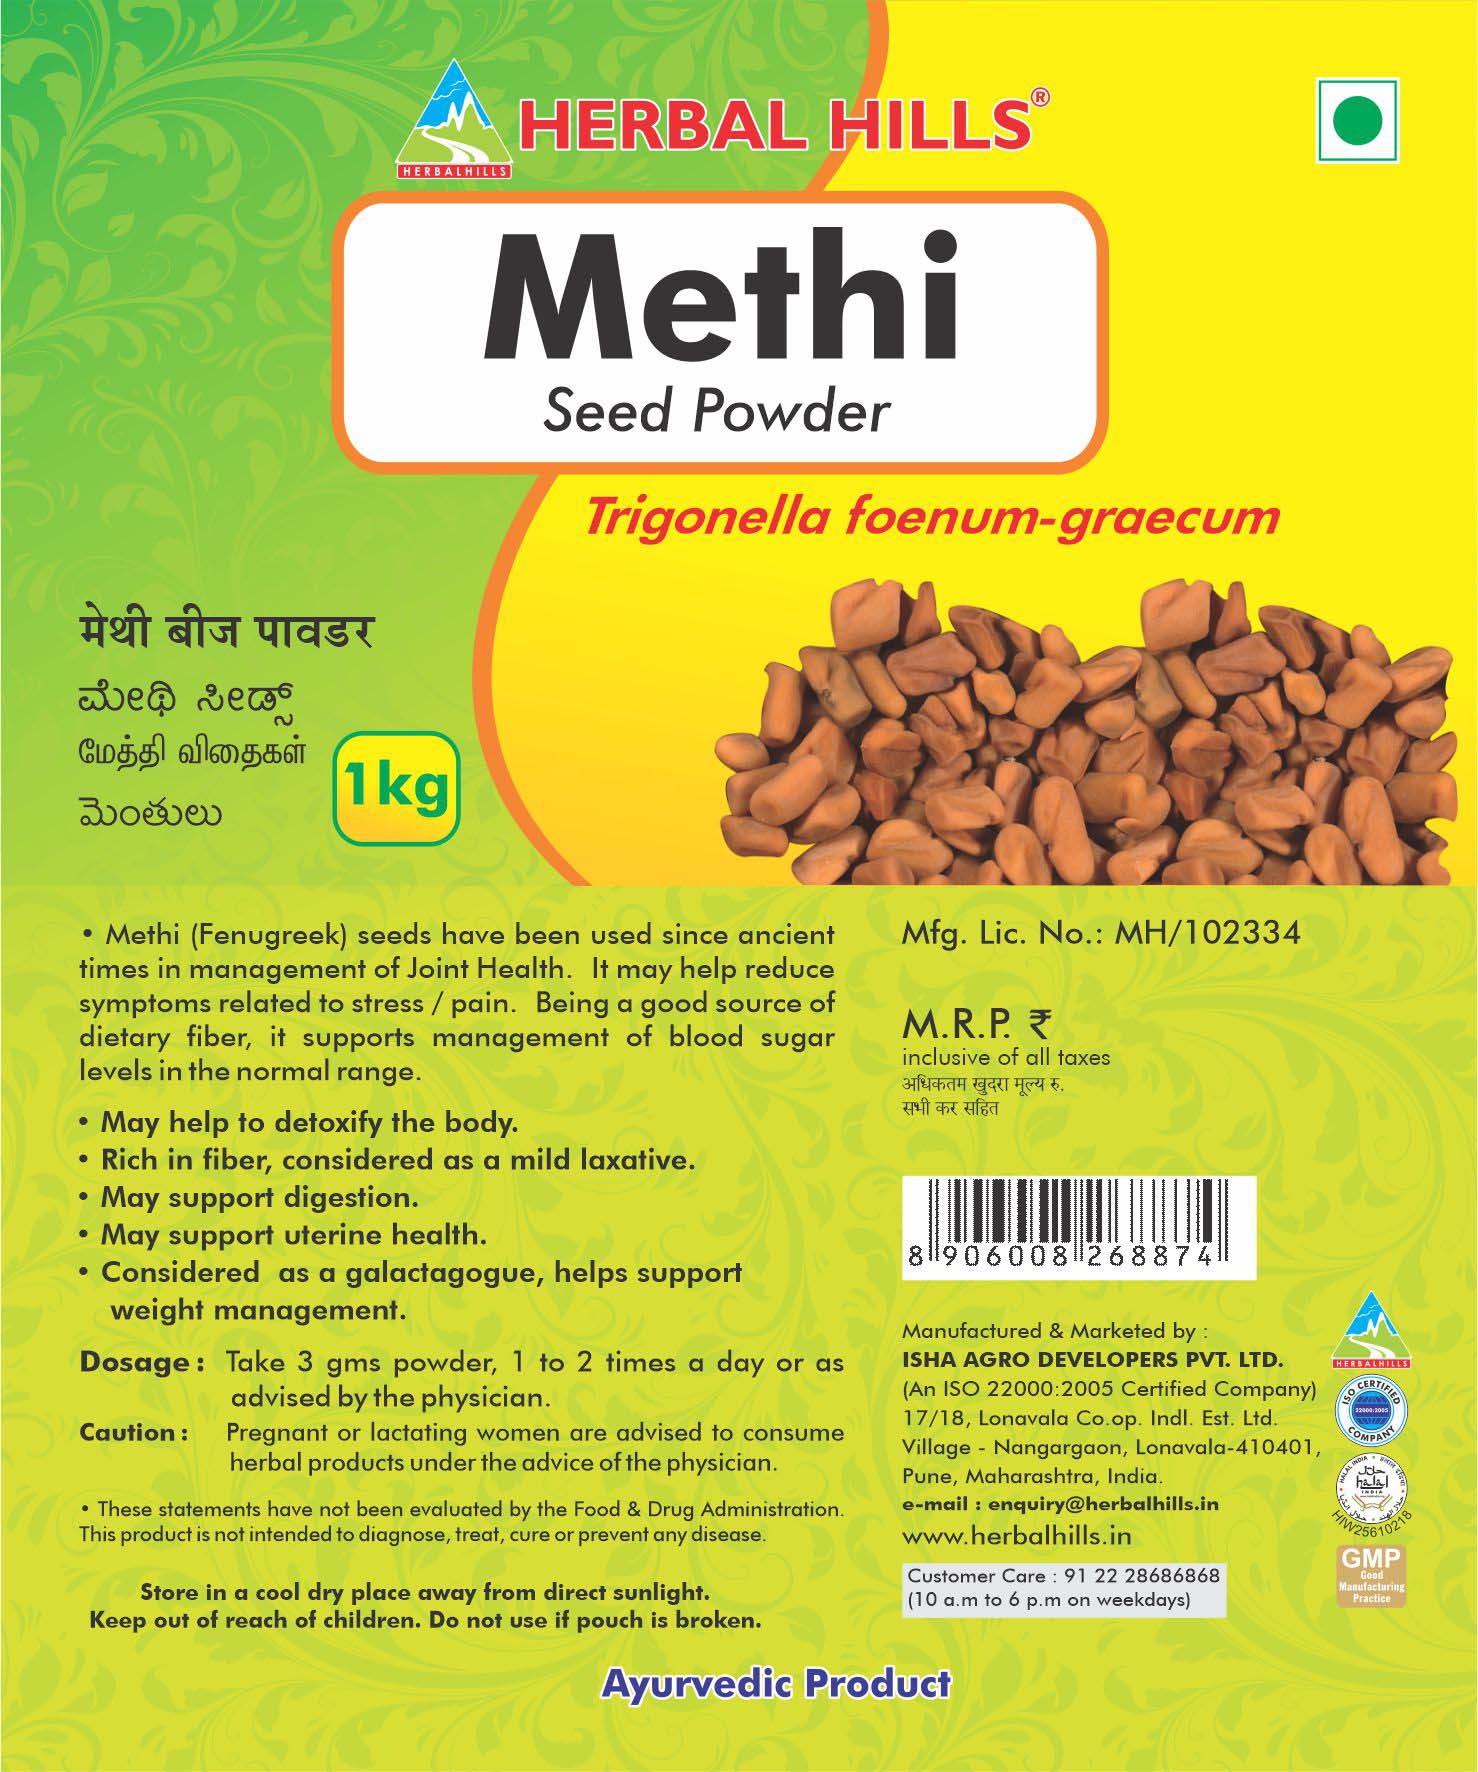 Buy Herbal Hills Methi Seed Powder at Best Price Online